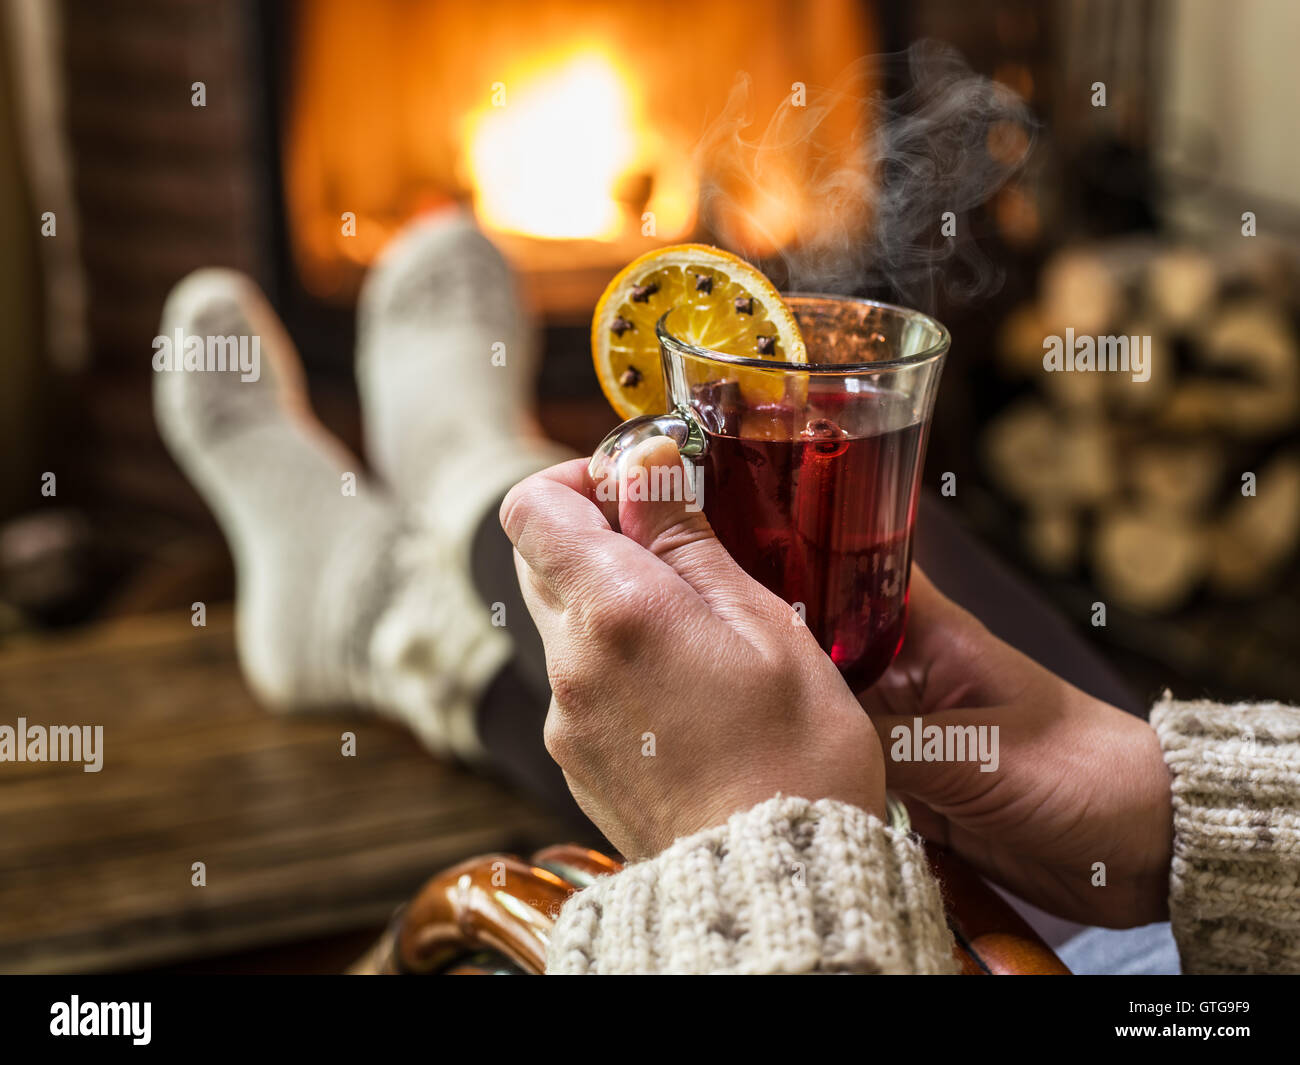 Heißer Glühwein und Buch in Händen der Frau. Entspannen vor Feuer in den kalten Wintertag. Stockfoto